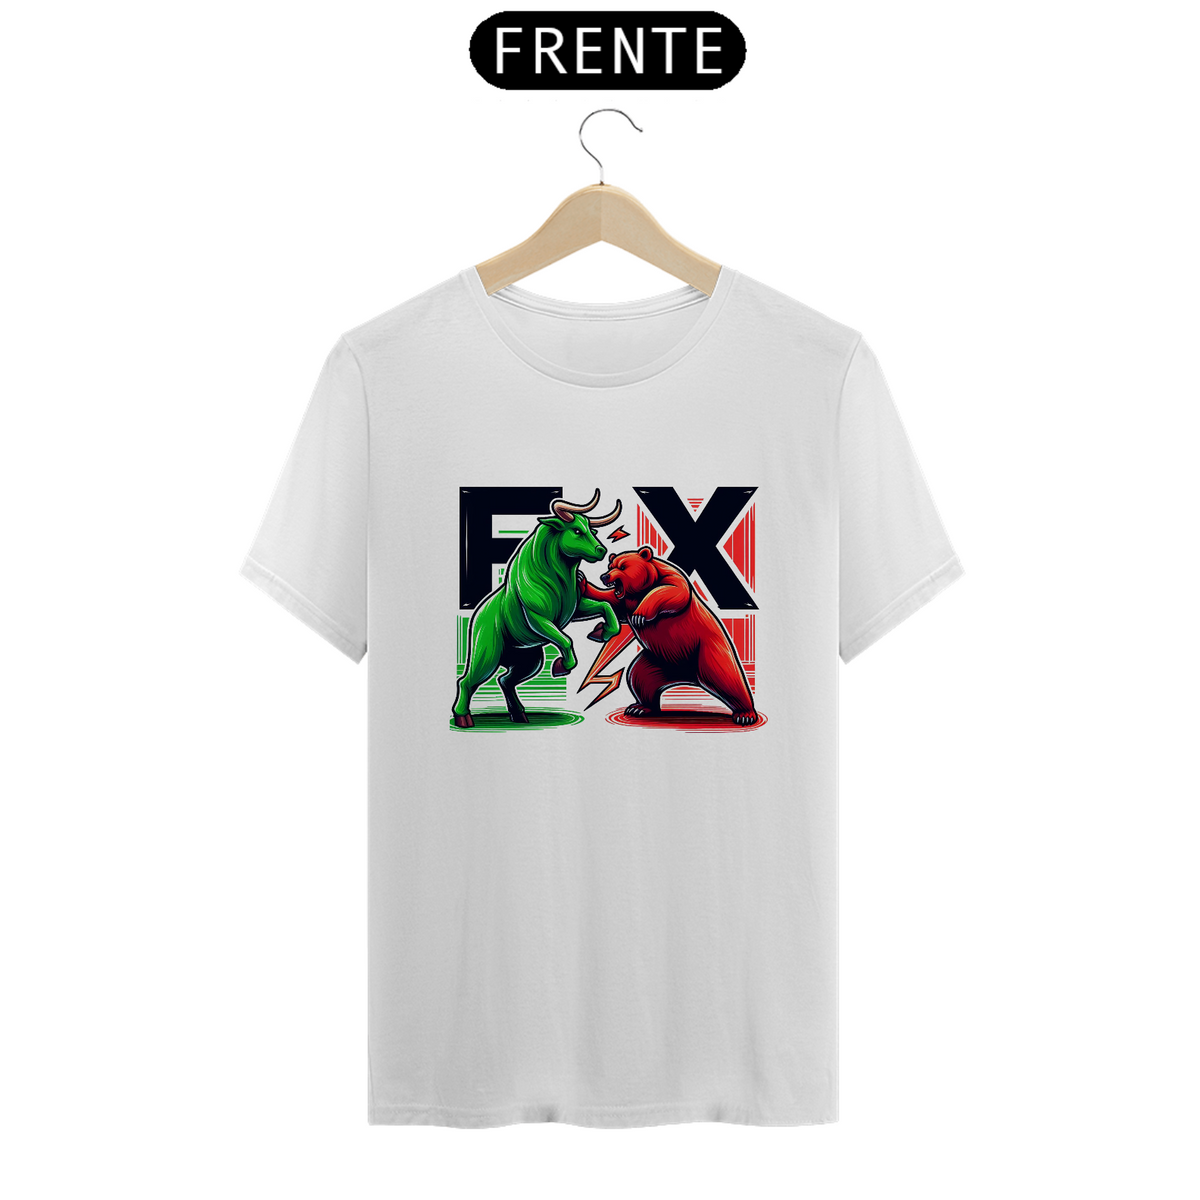 Nome do produto: T-shirt FXcopy